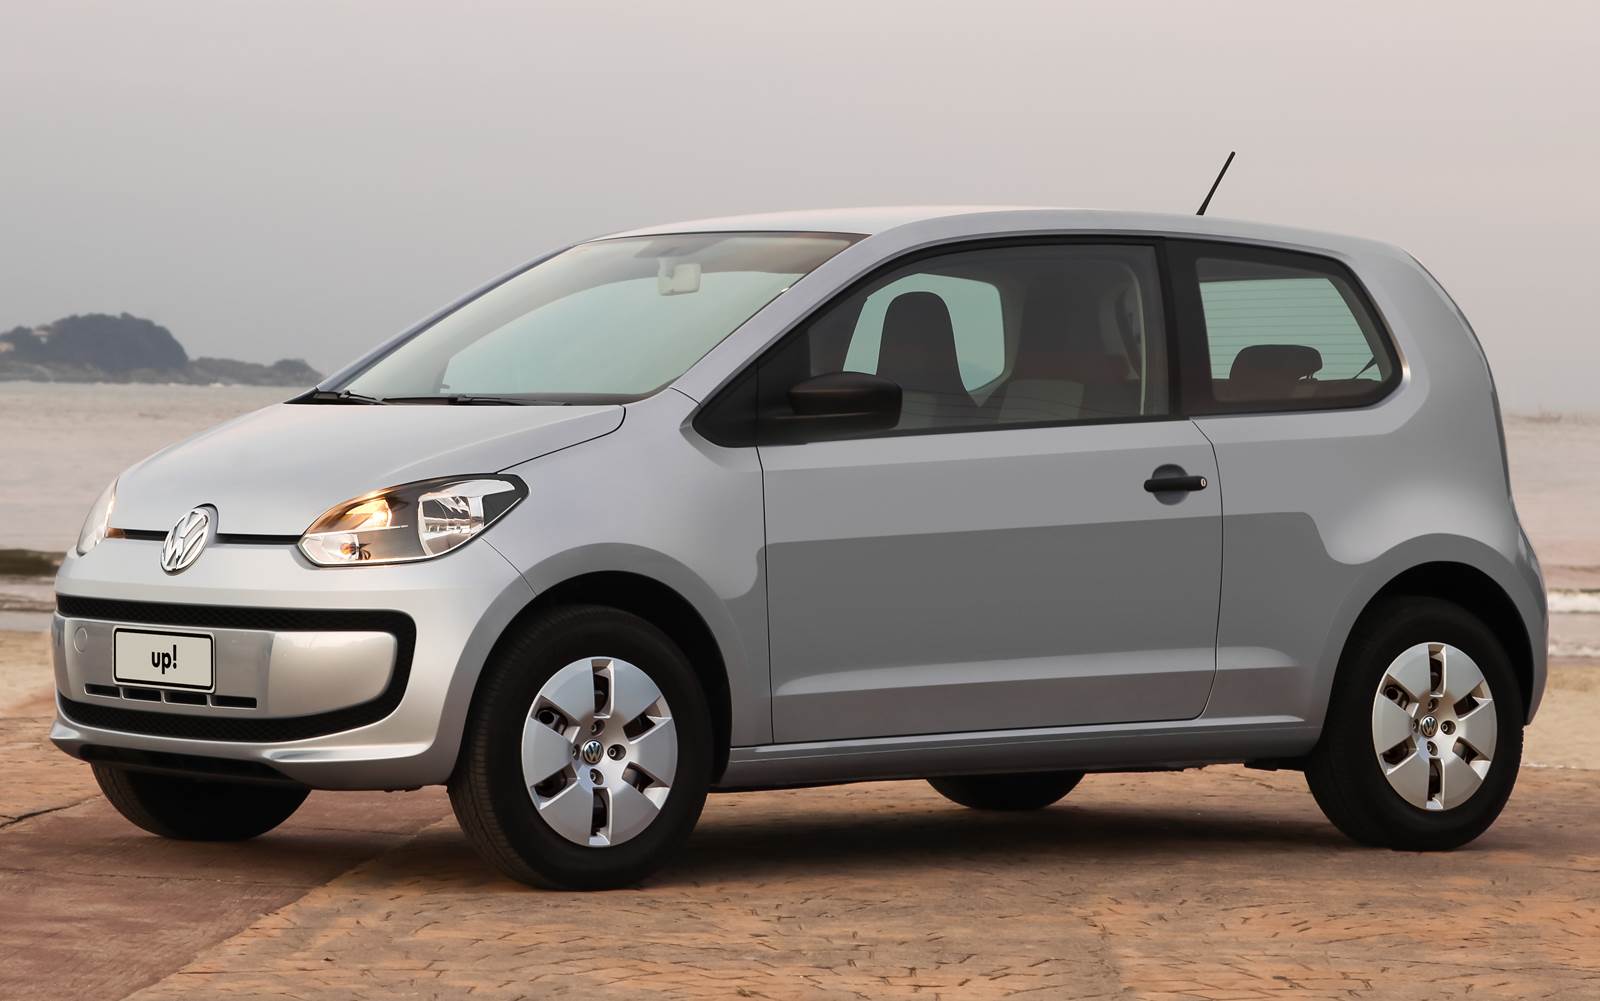 Volkswagen up! tabela de preços IPI cheio janeiro